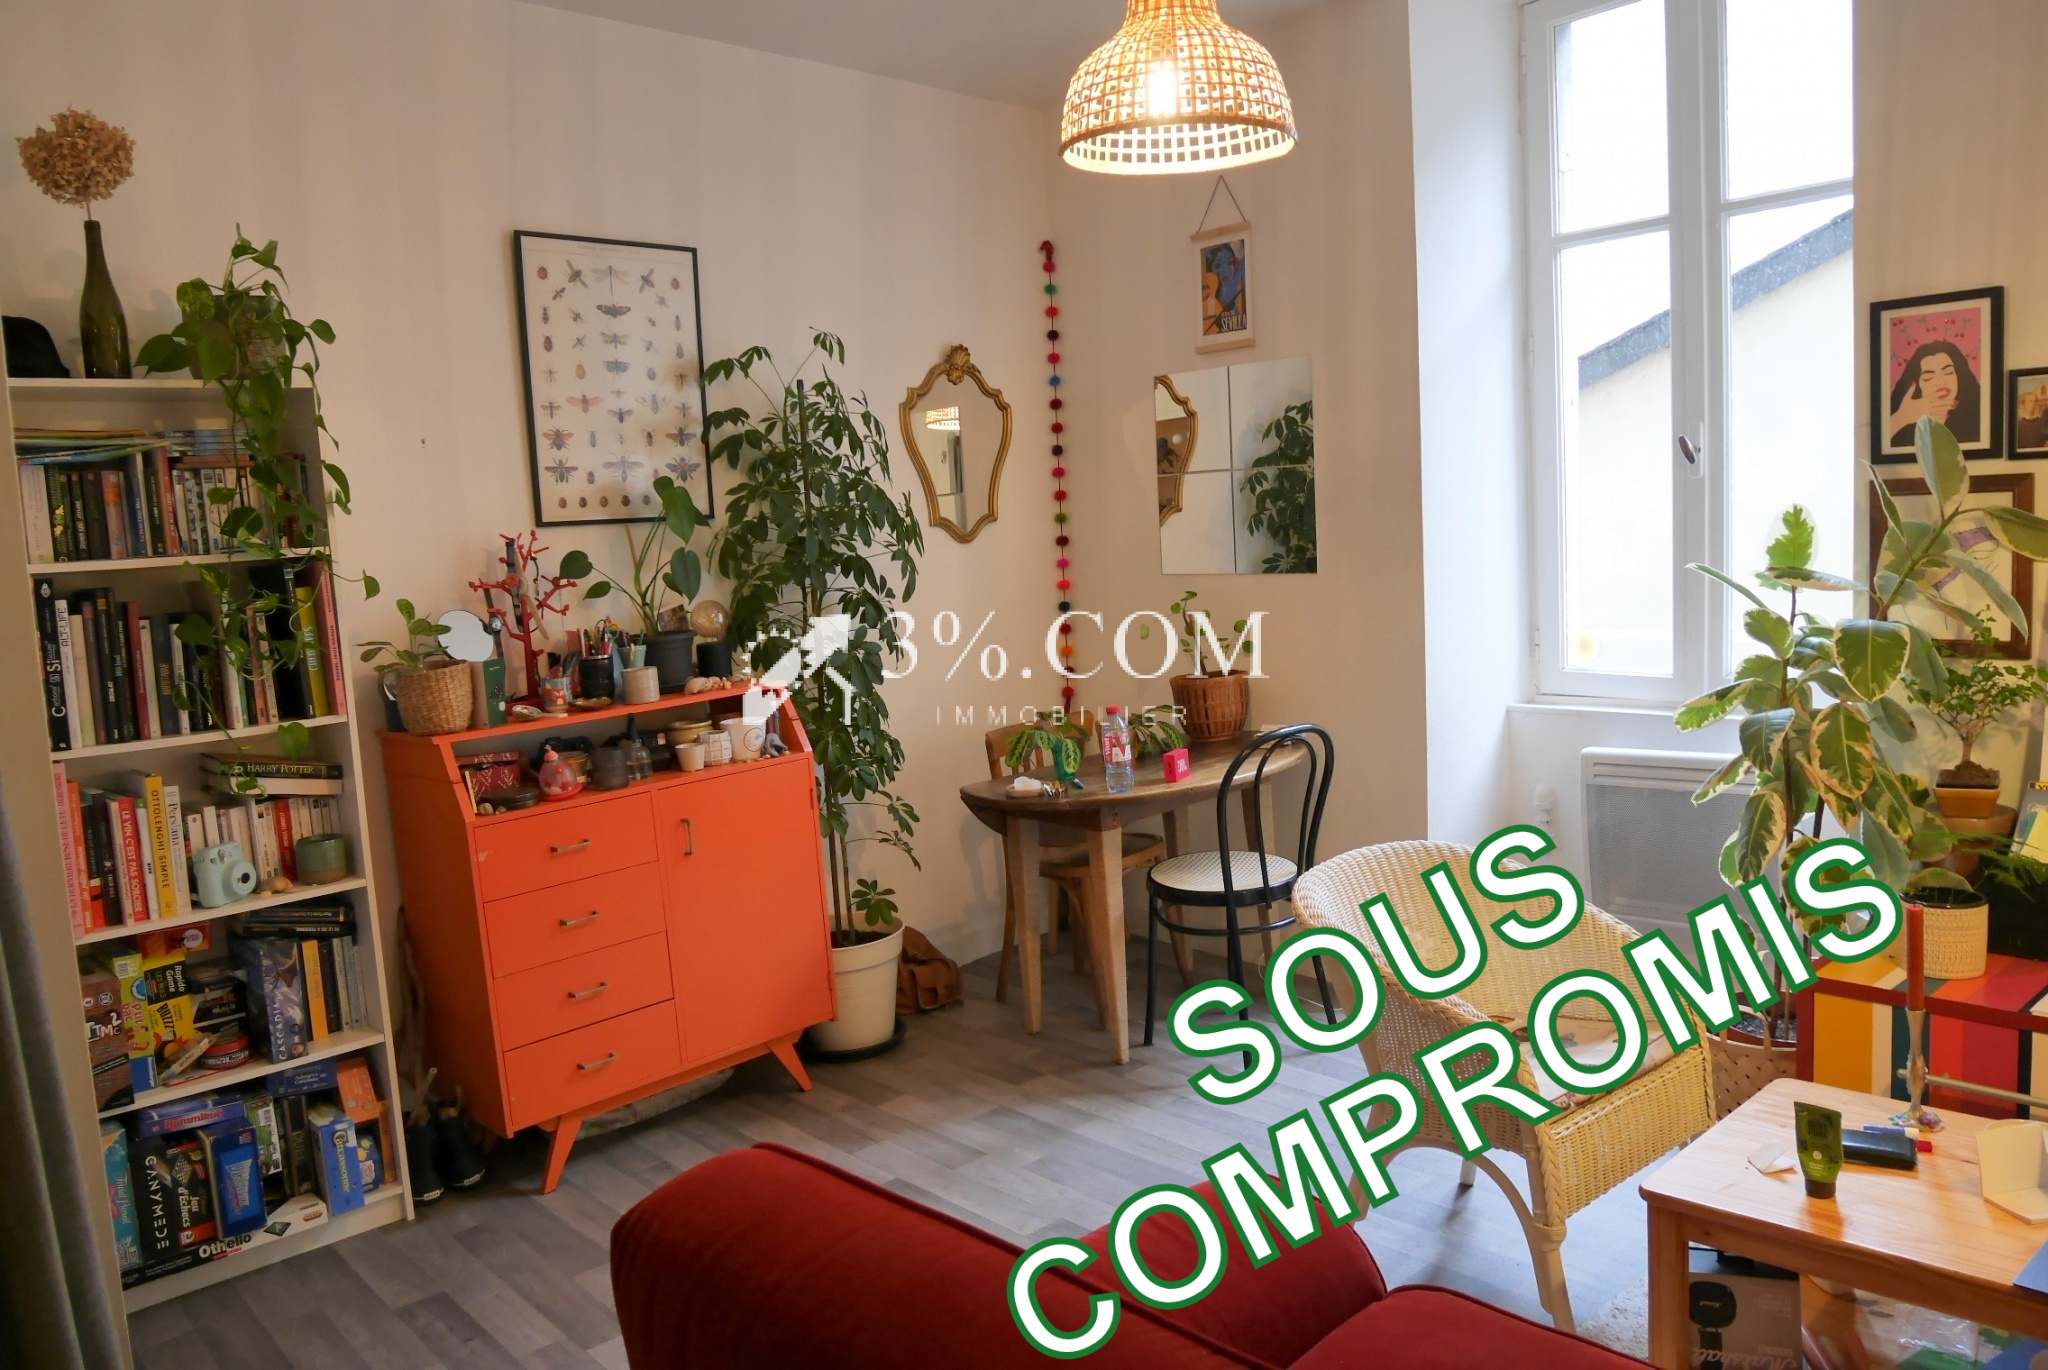 Vente Appartement 30m² 2 Pièces à Nantes (44000) - 3%.Com